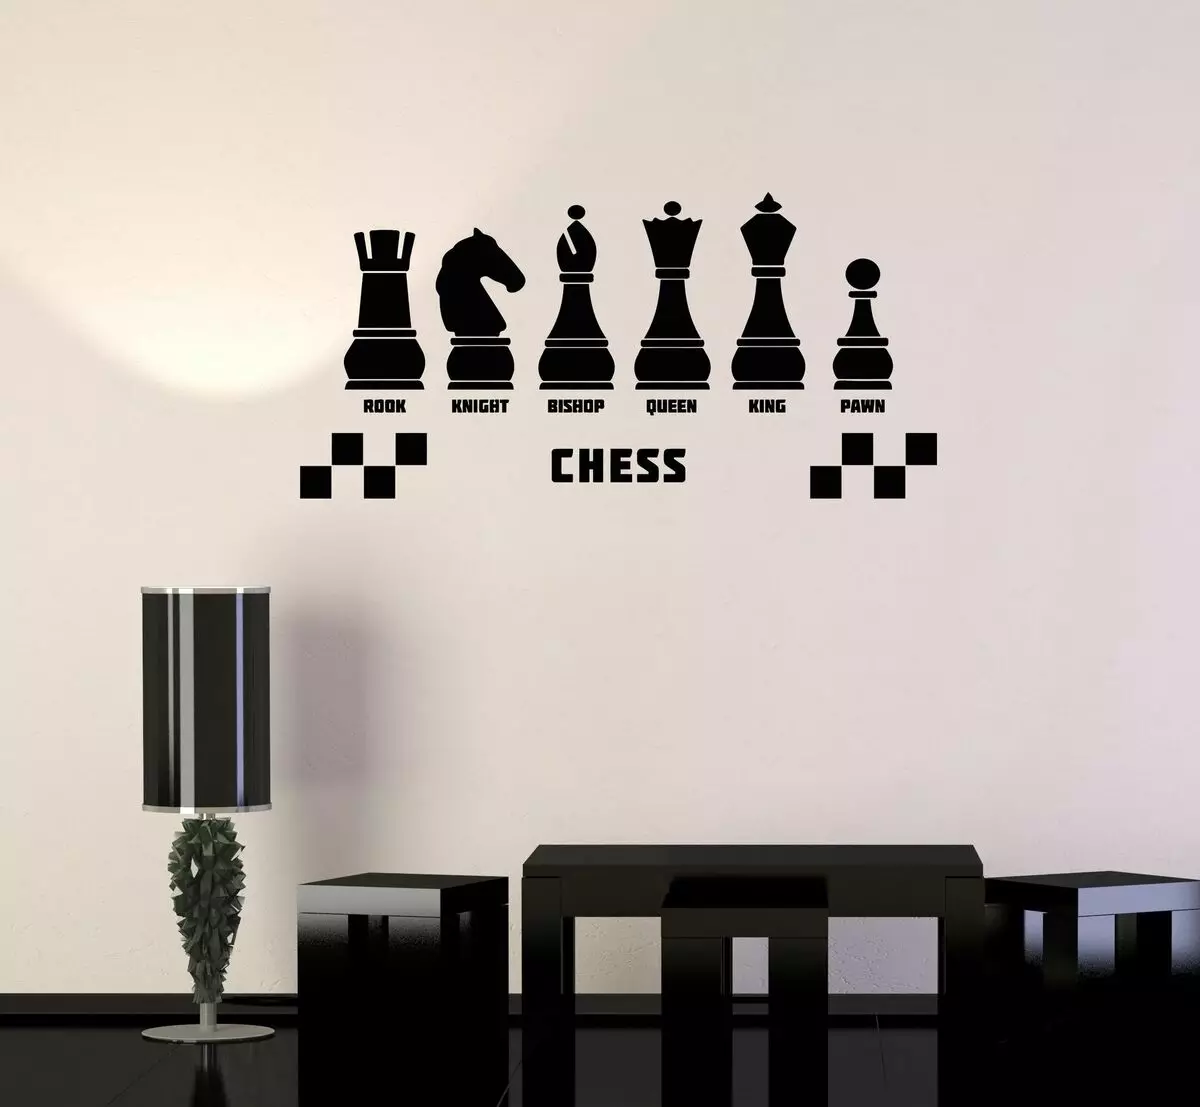 Uso criativo de um tabuleiro de xadrez no interior